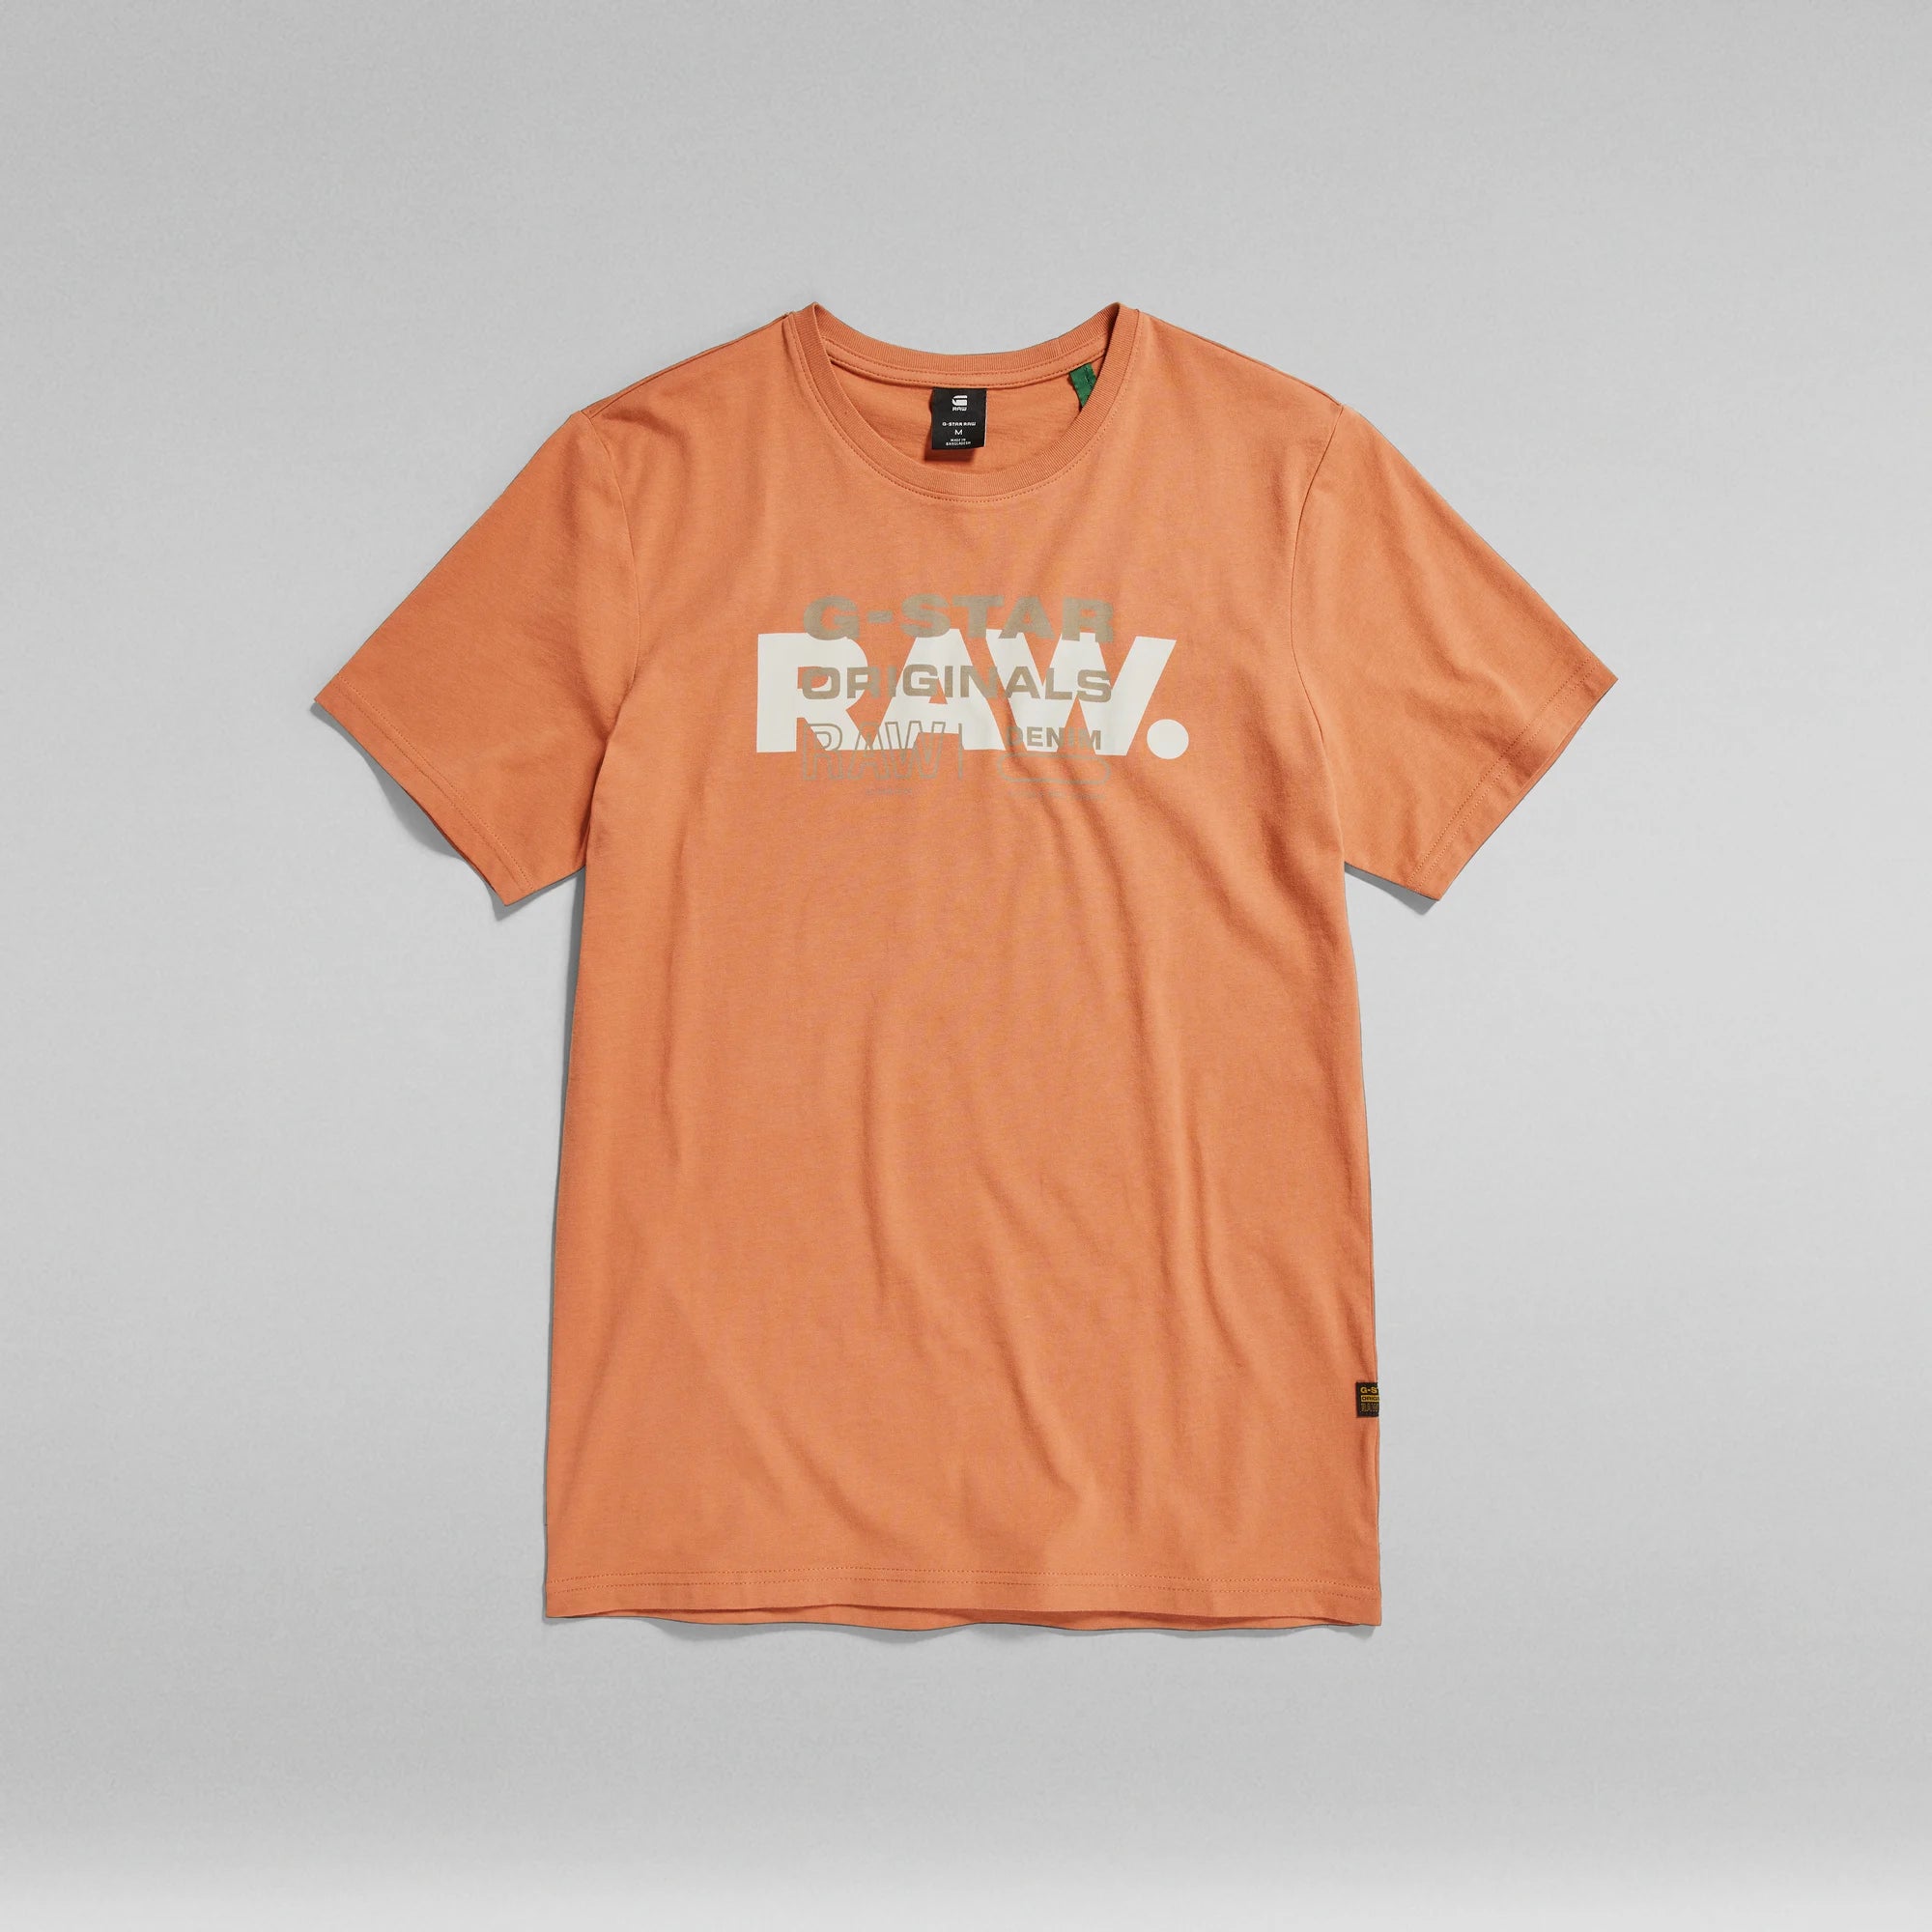 G Star Tee Shirt - Raw Originals Slim Round Neck - Autumn Leaf